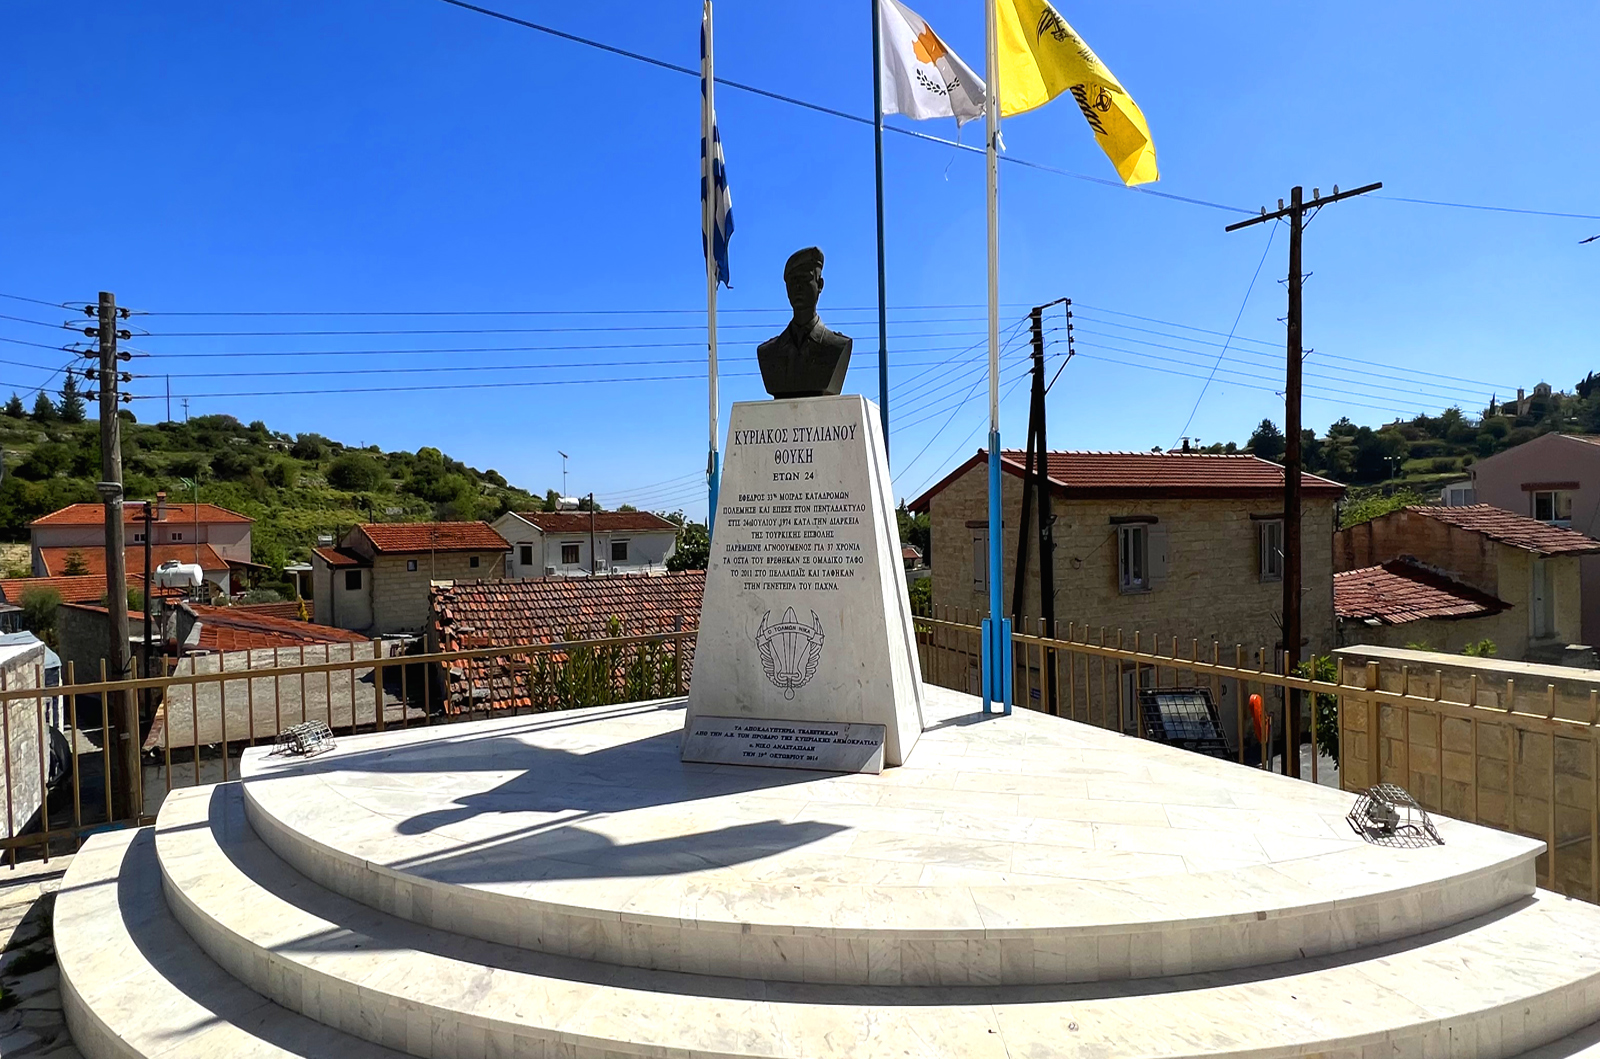 Kyriakos Stylianou Thouki Monument in Pachna Village